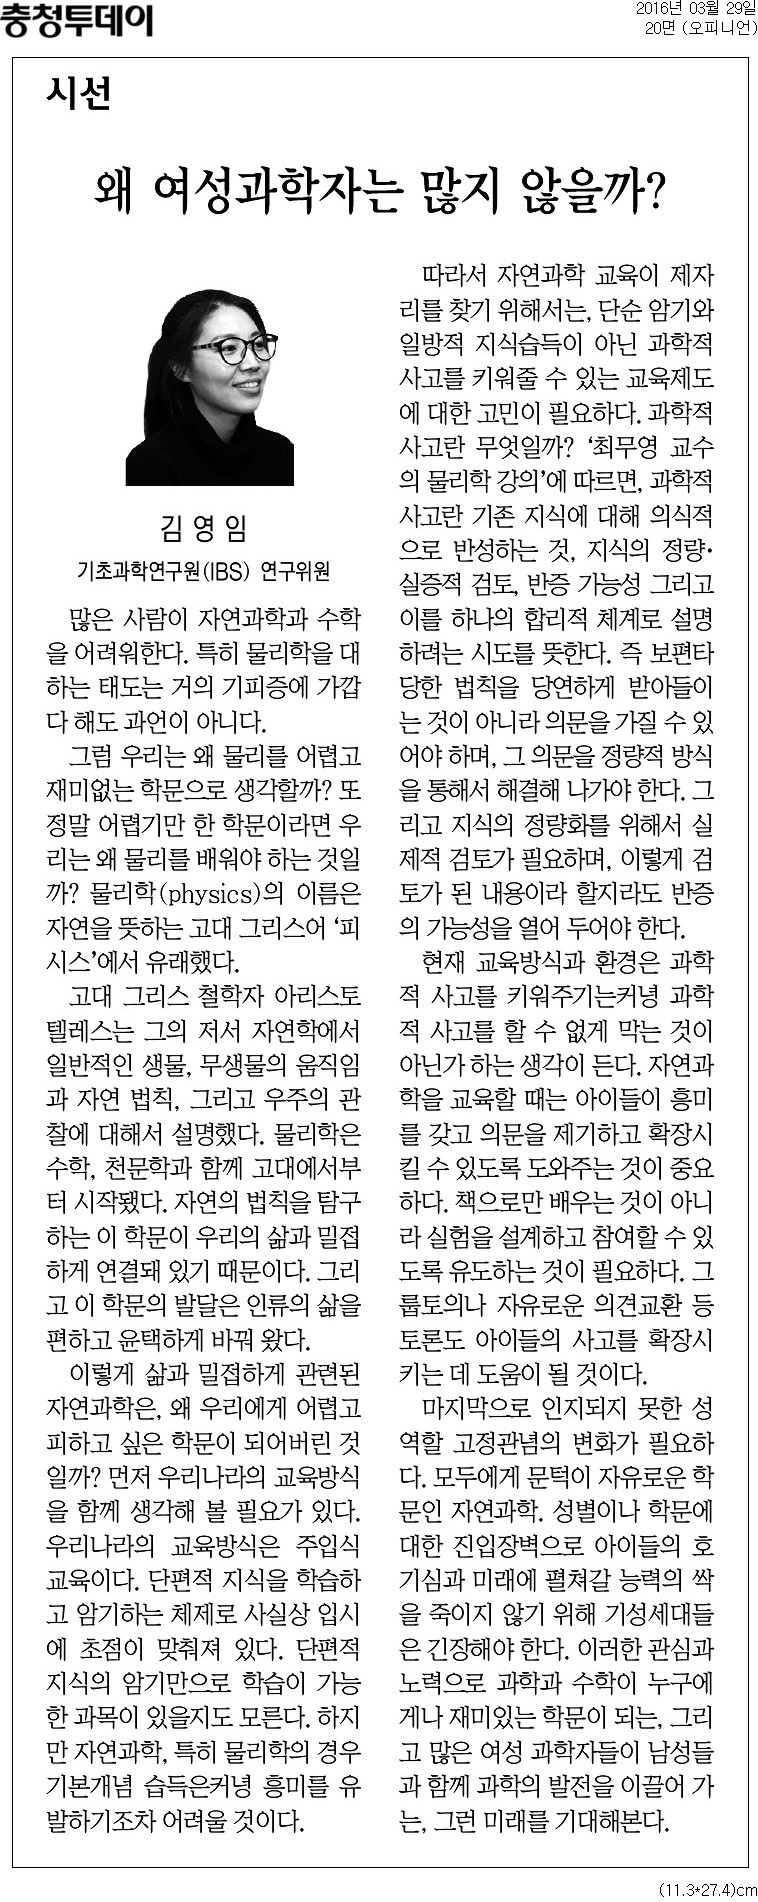 물리학 교육현황 관련 신문기사 - 충청투데이 (2016년 3월 29일)